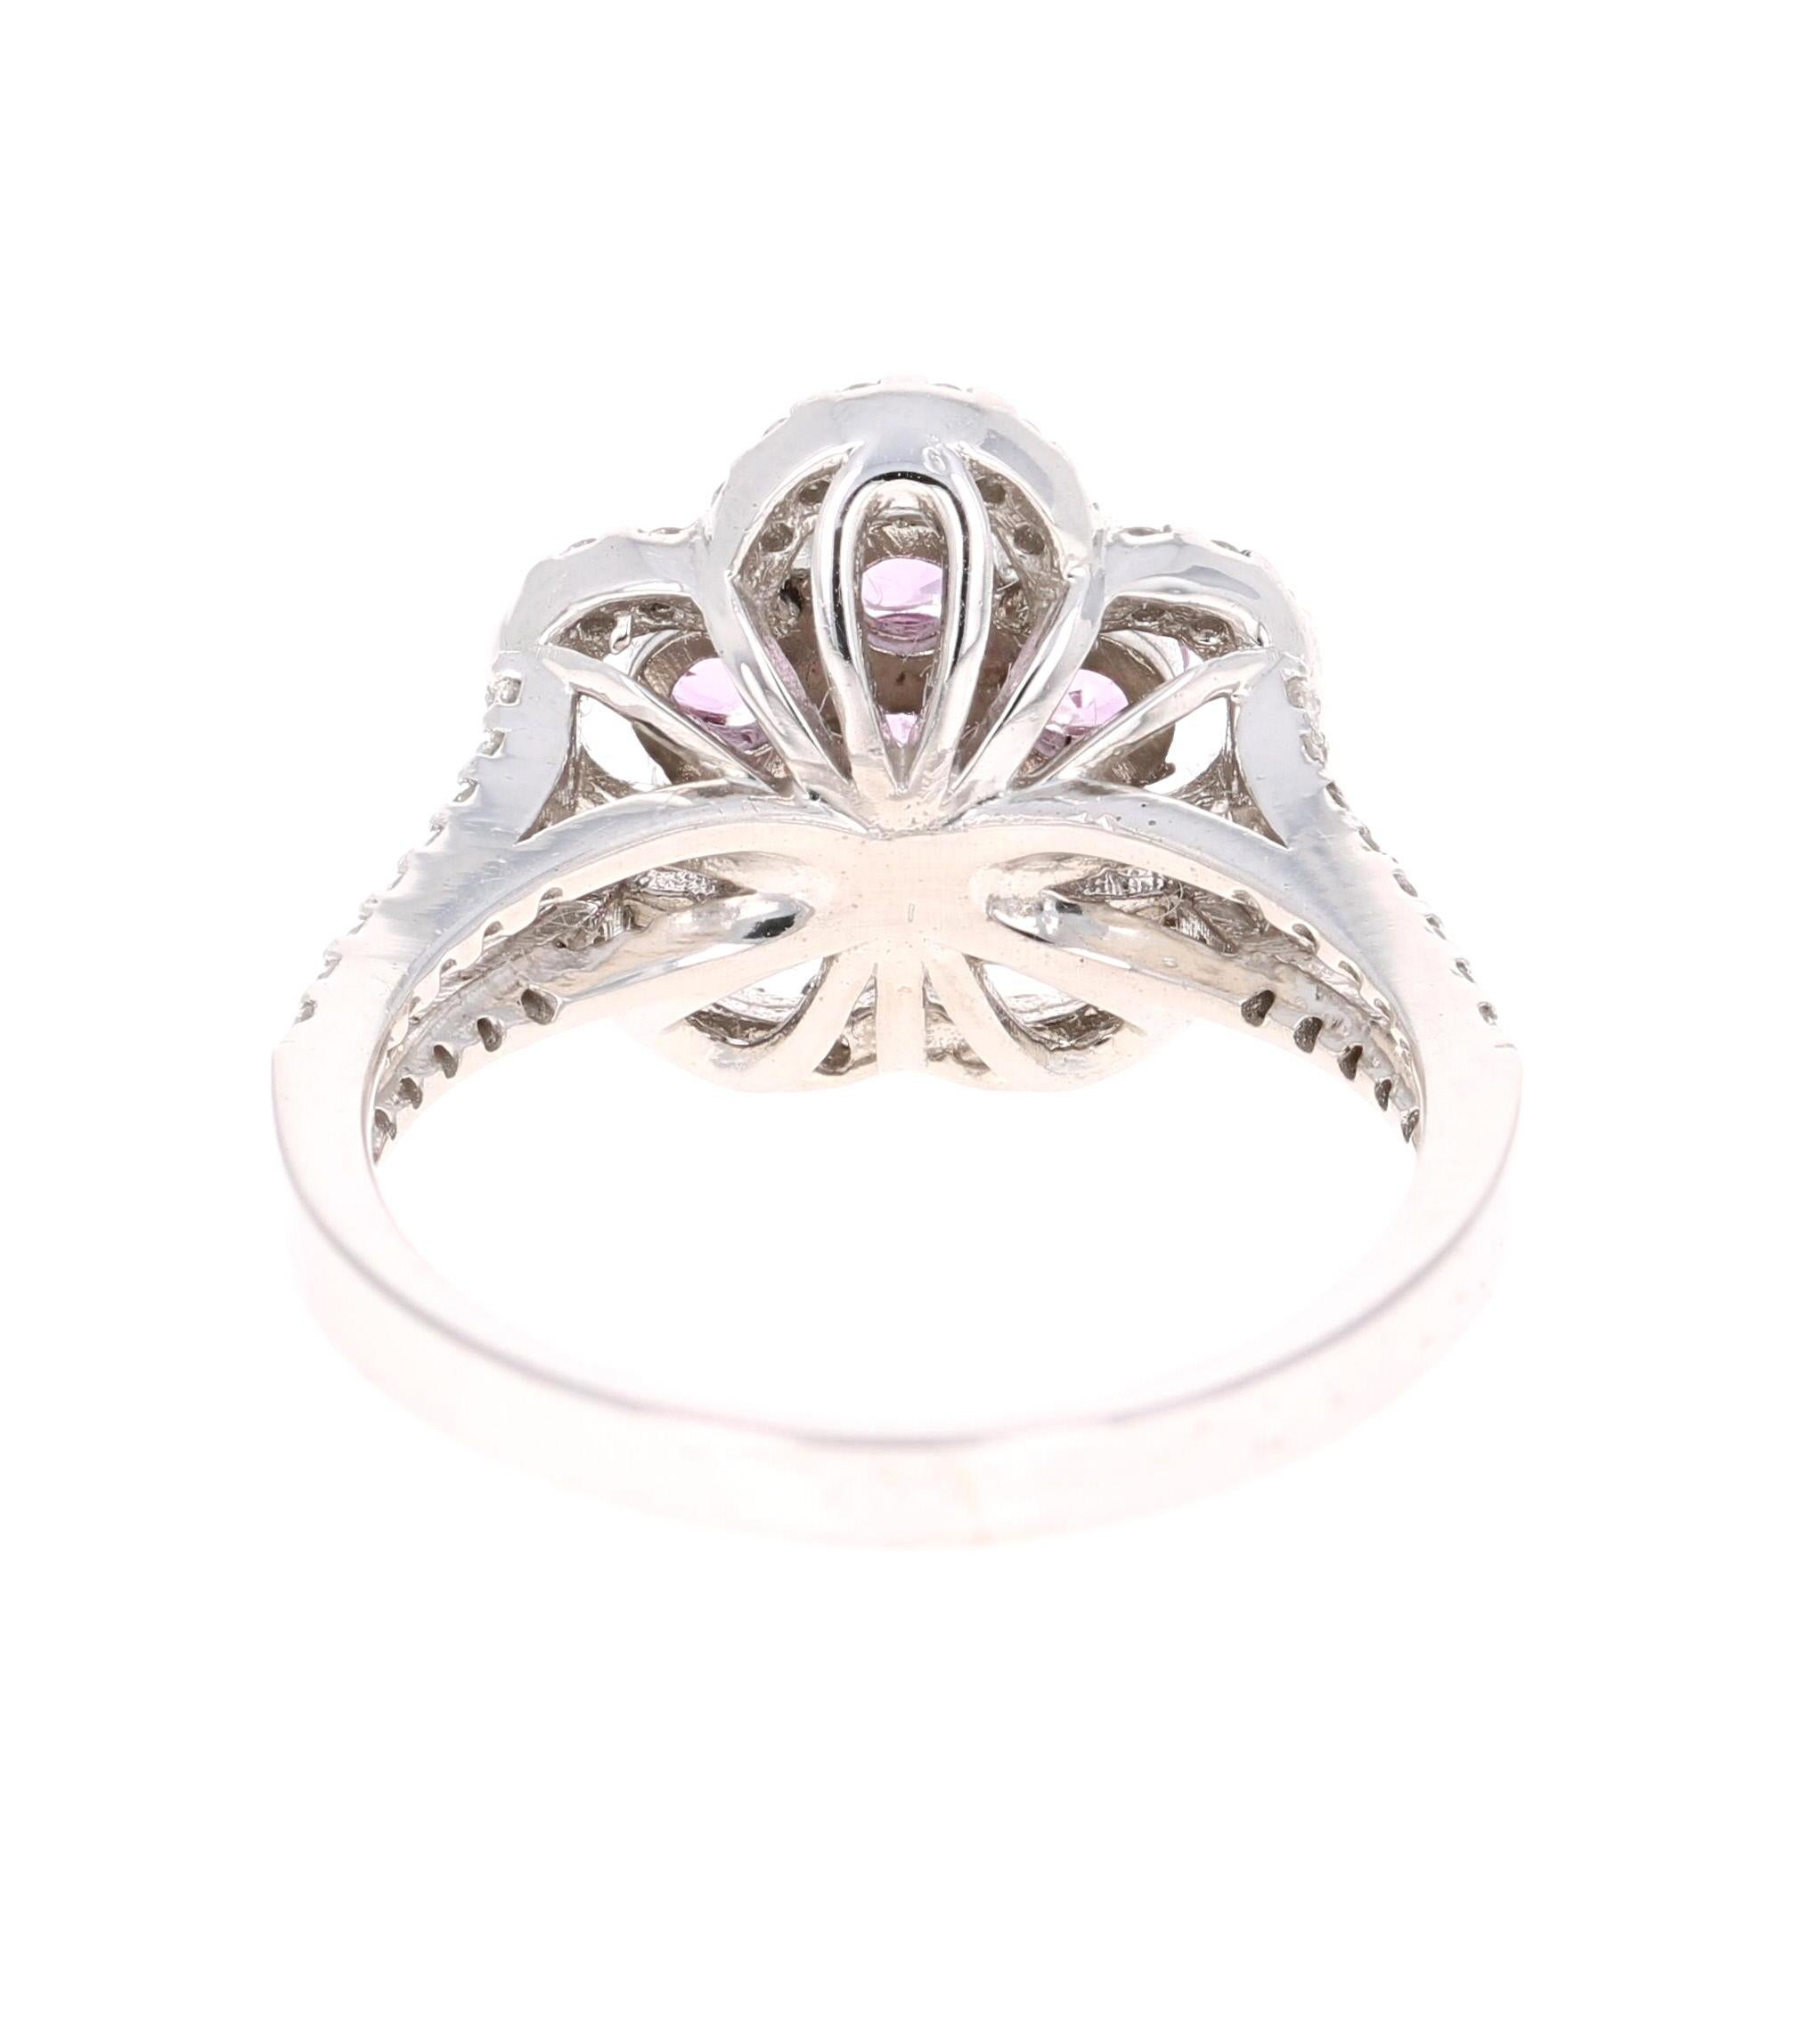 Round Cut 1.51 Carat Pink Sapphire Diamond 14 Karat White Gold Ring